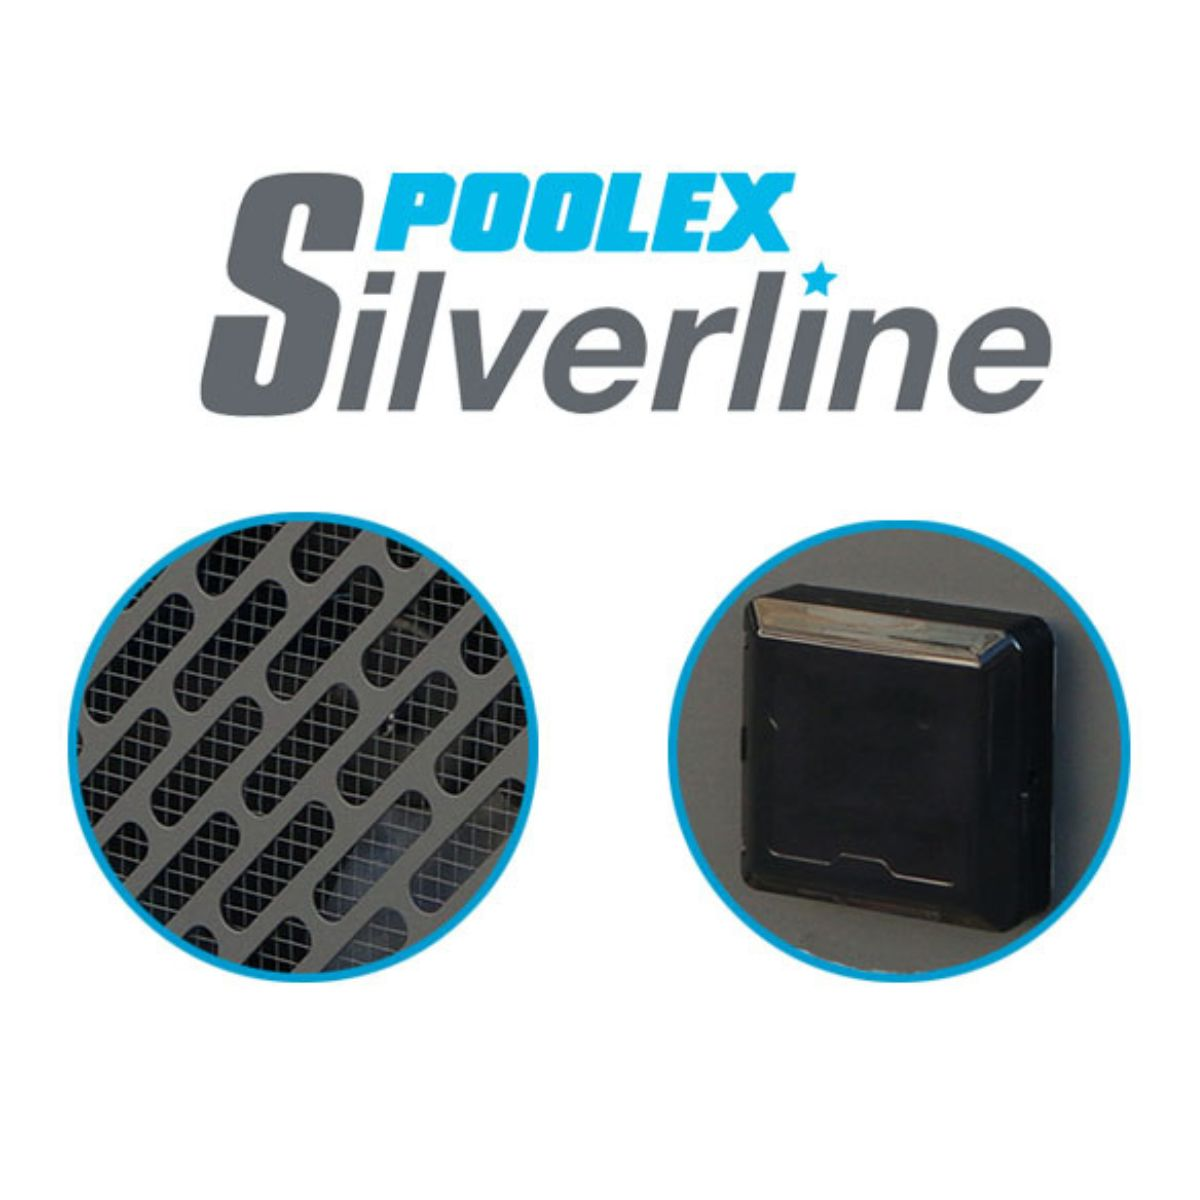 POOLEX Silverline 55 Schwimmbadpumpe